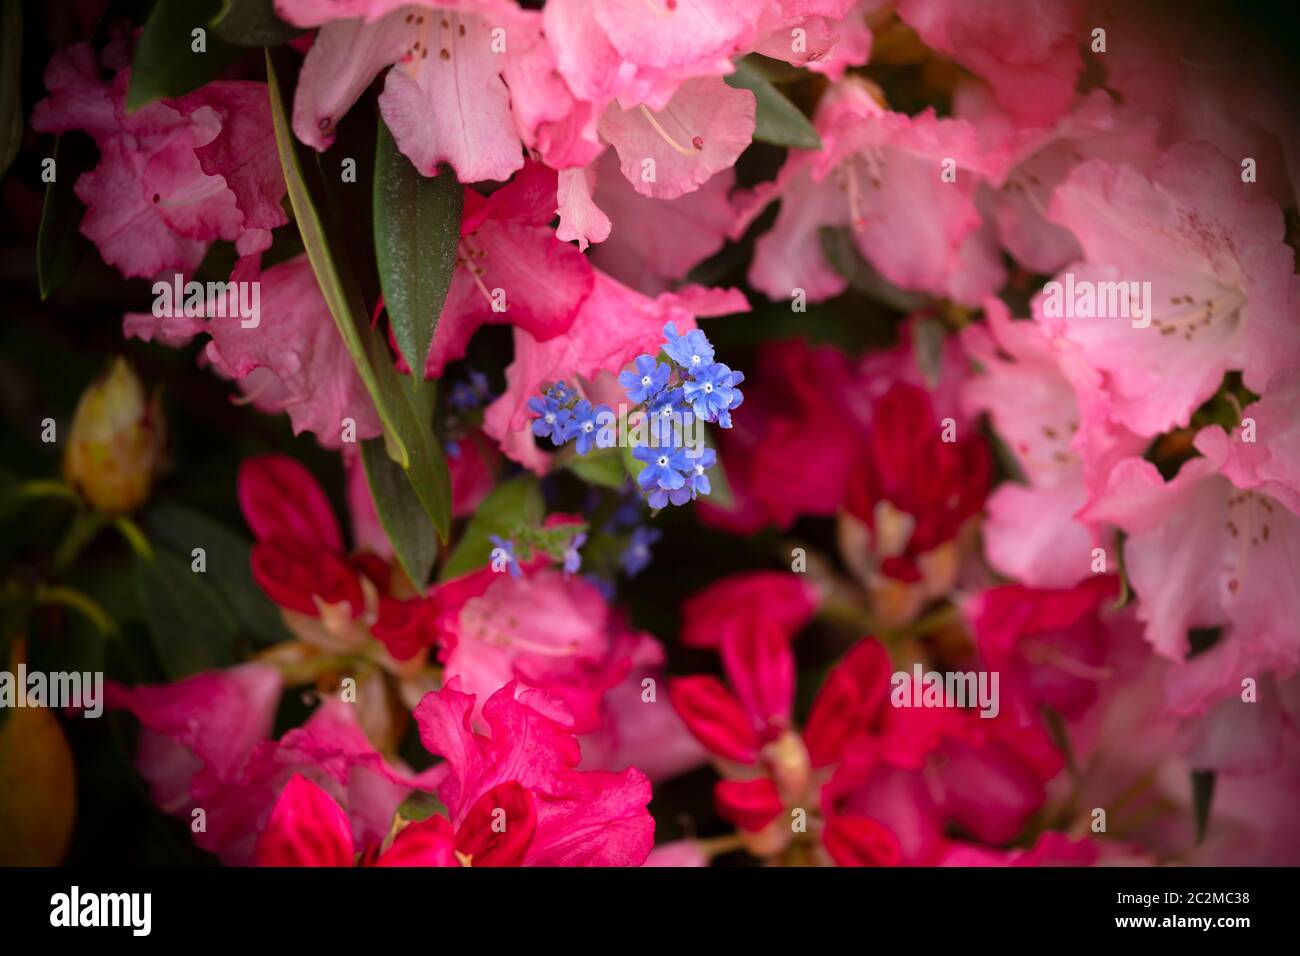 WA16909-00...WASHINGTON - EINE blaue Blume, die in einen blühenden Rhododendron-Busch wächst. Stockfoto